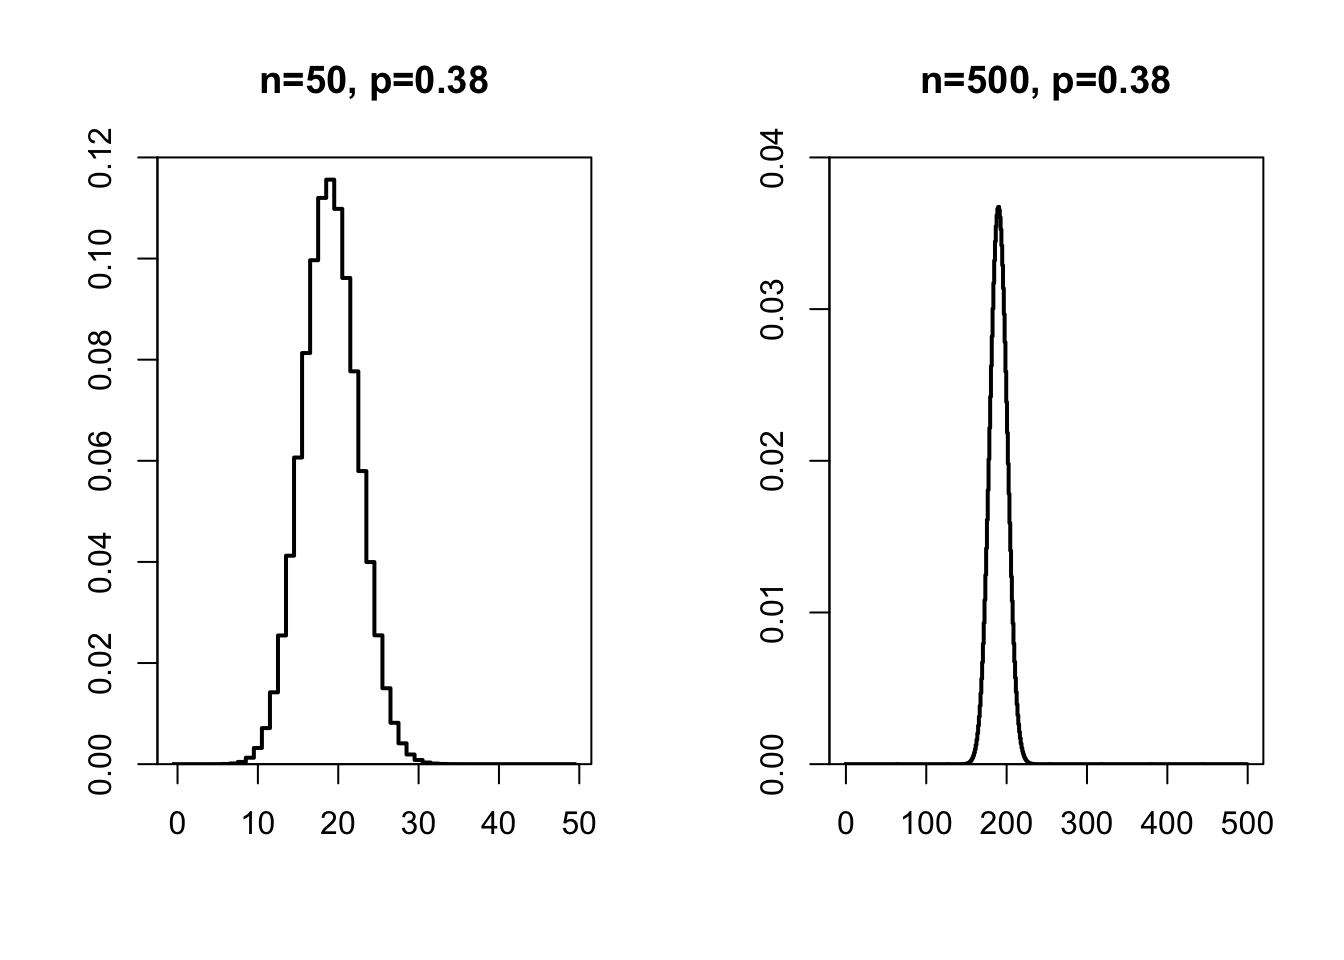 Kansverdeling van een binomiale variabele x met n=50 (links) en n=500 (rechts) en p=.38.